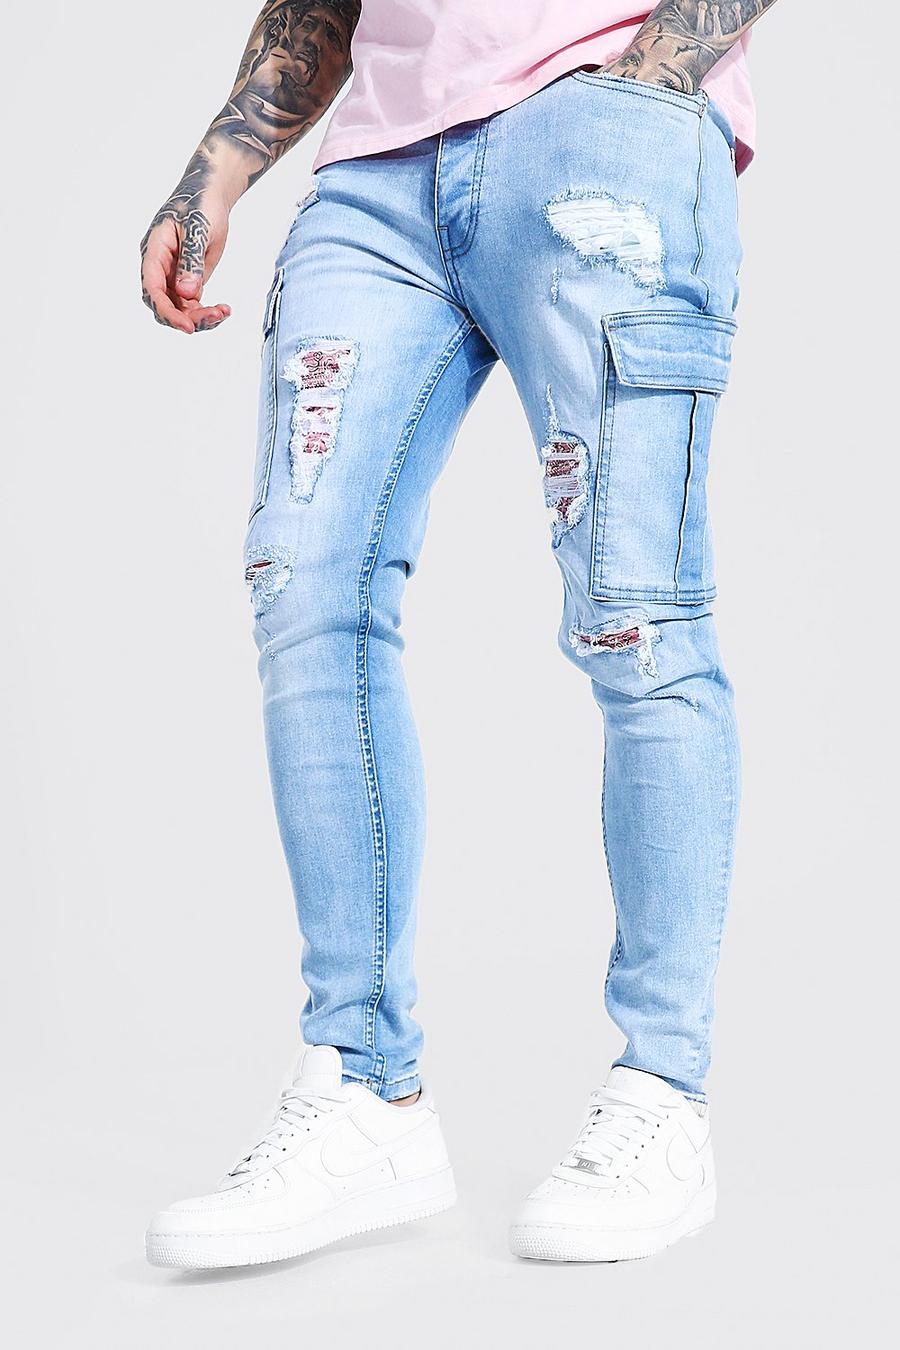 toezicht houden op dam meesterwerk Men's Ripped Jeans |Men's Distressed Jeans | boohoo USA